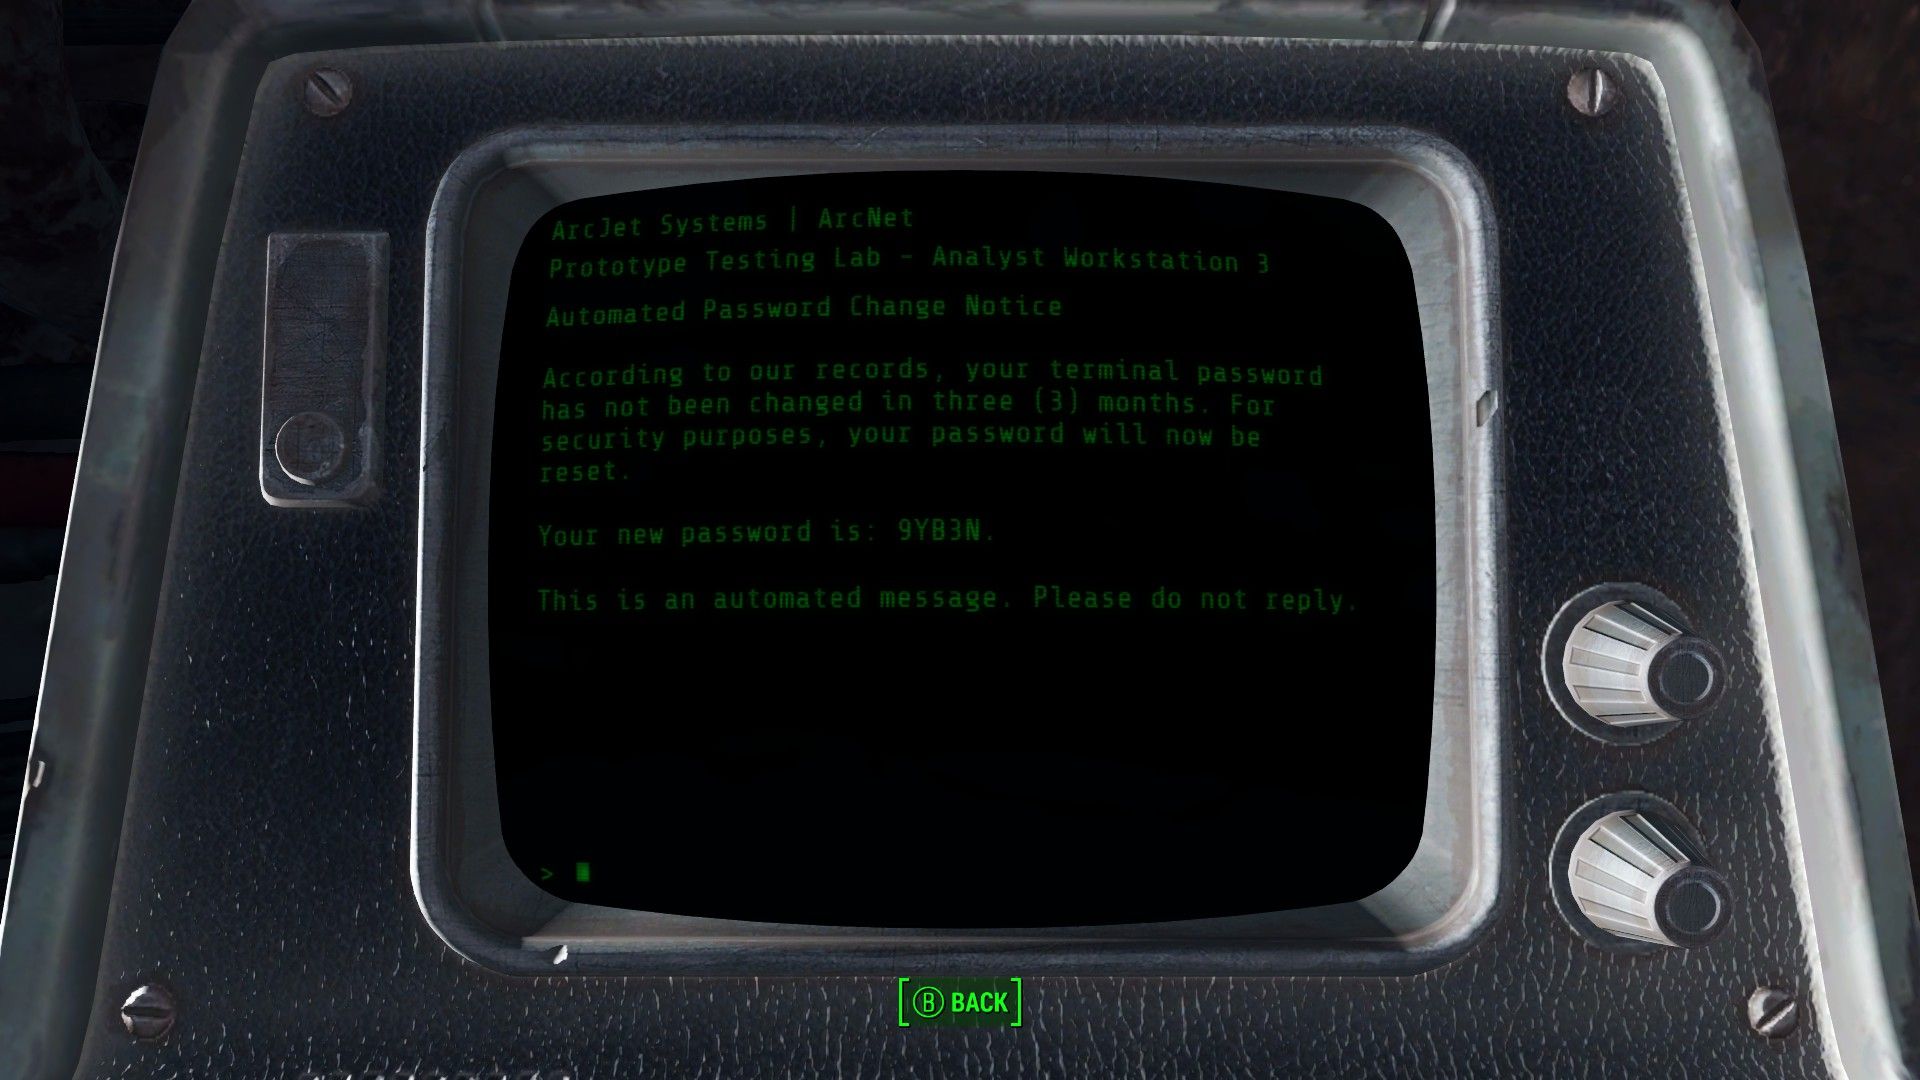 Как разблокировать терминал. Arc Jet Systems Fallout 4 местонахождение. Fallout Terminal.